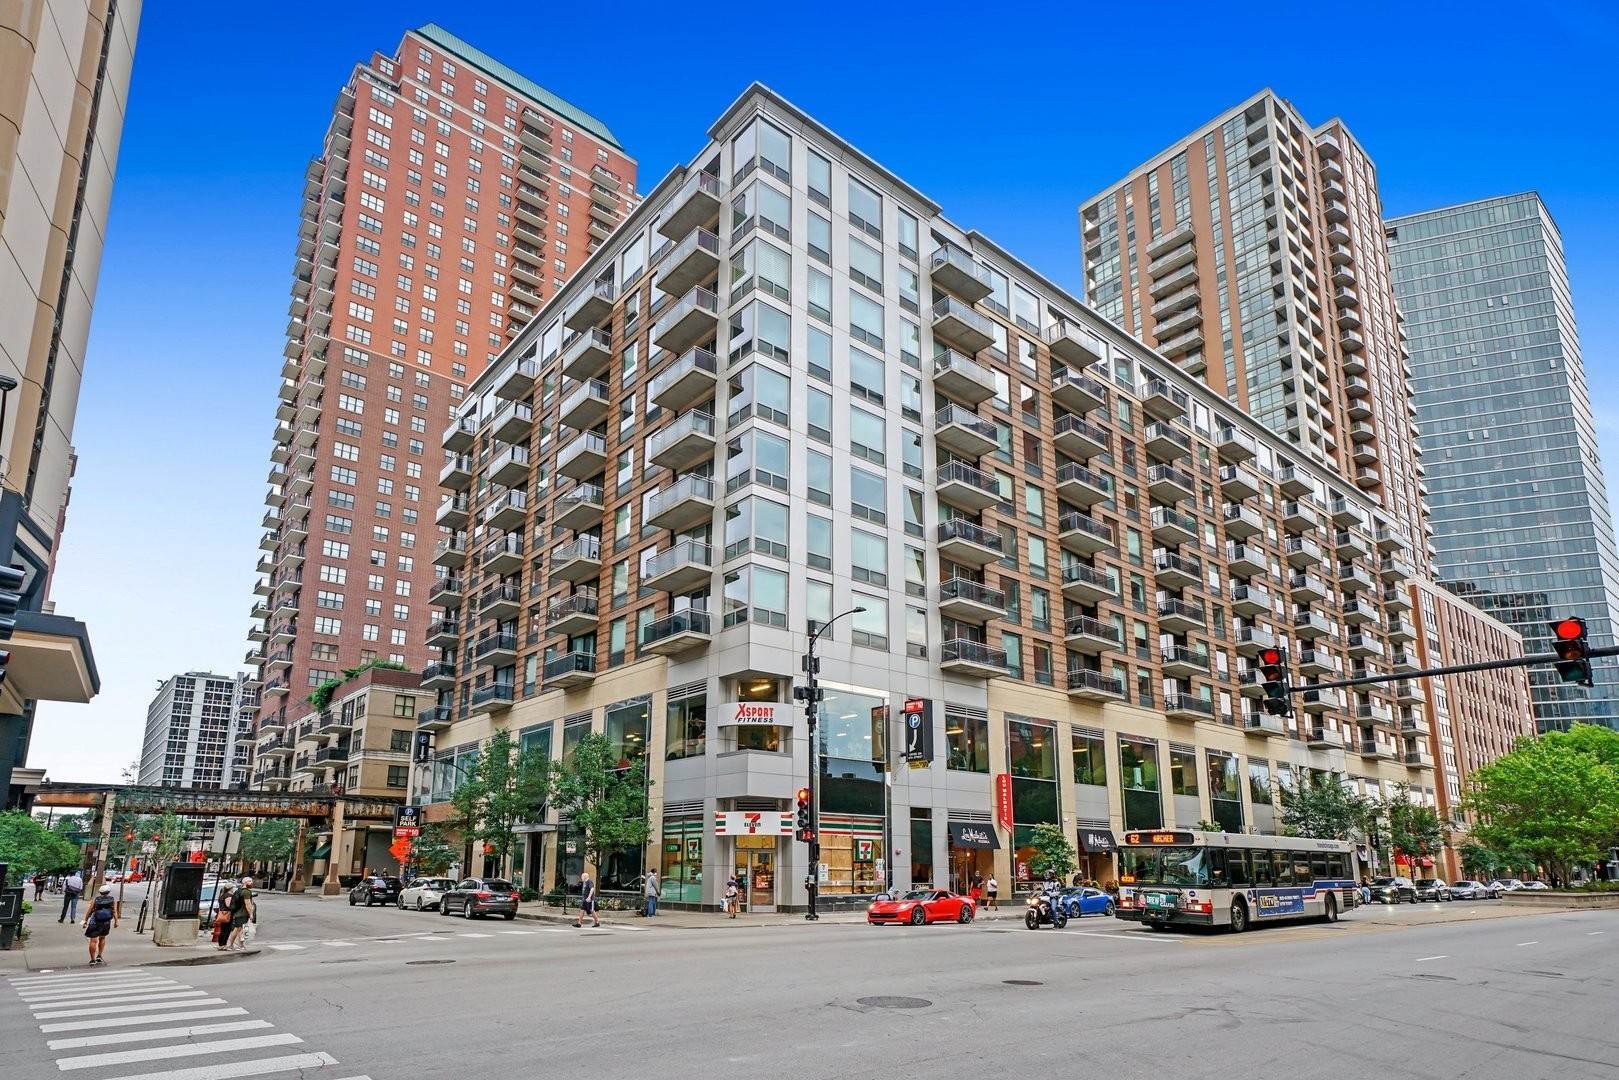 Condominium at South Loop, Chicago, IL 60605